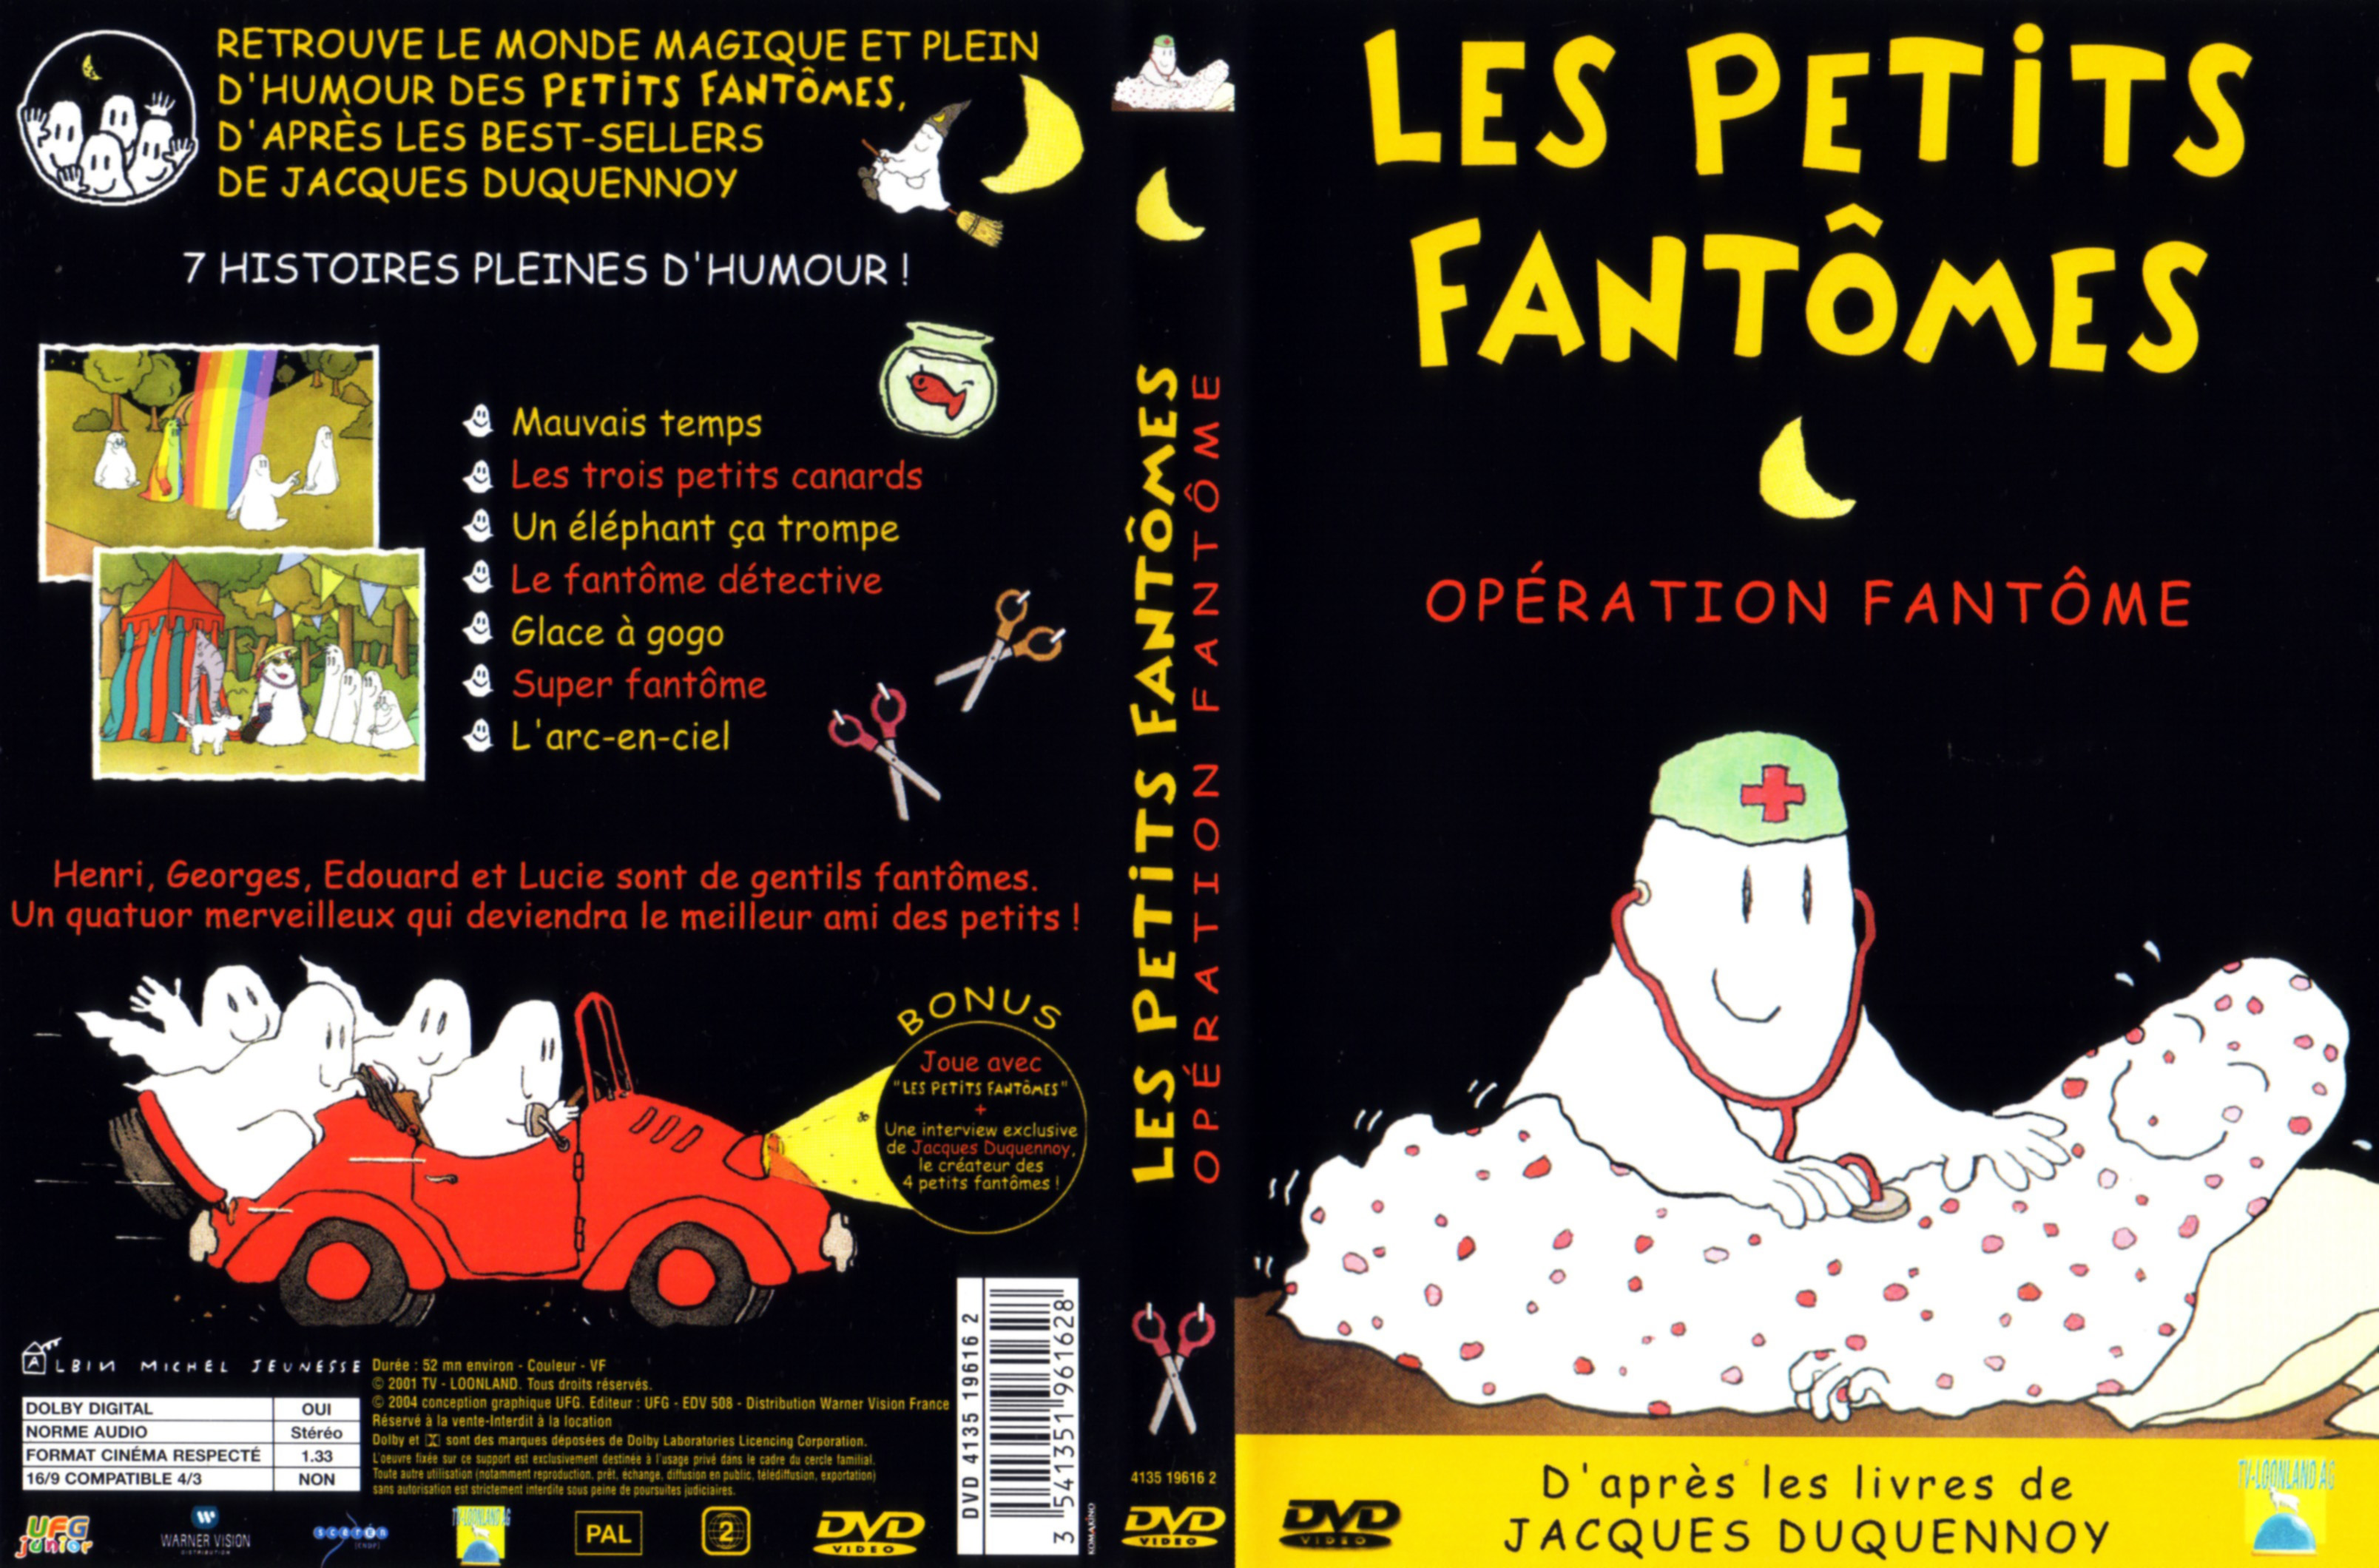 Jaquette DVD Les petits fantomes - Opration fantome